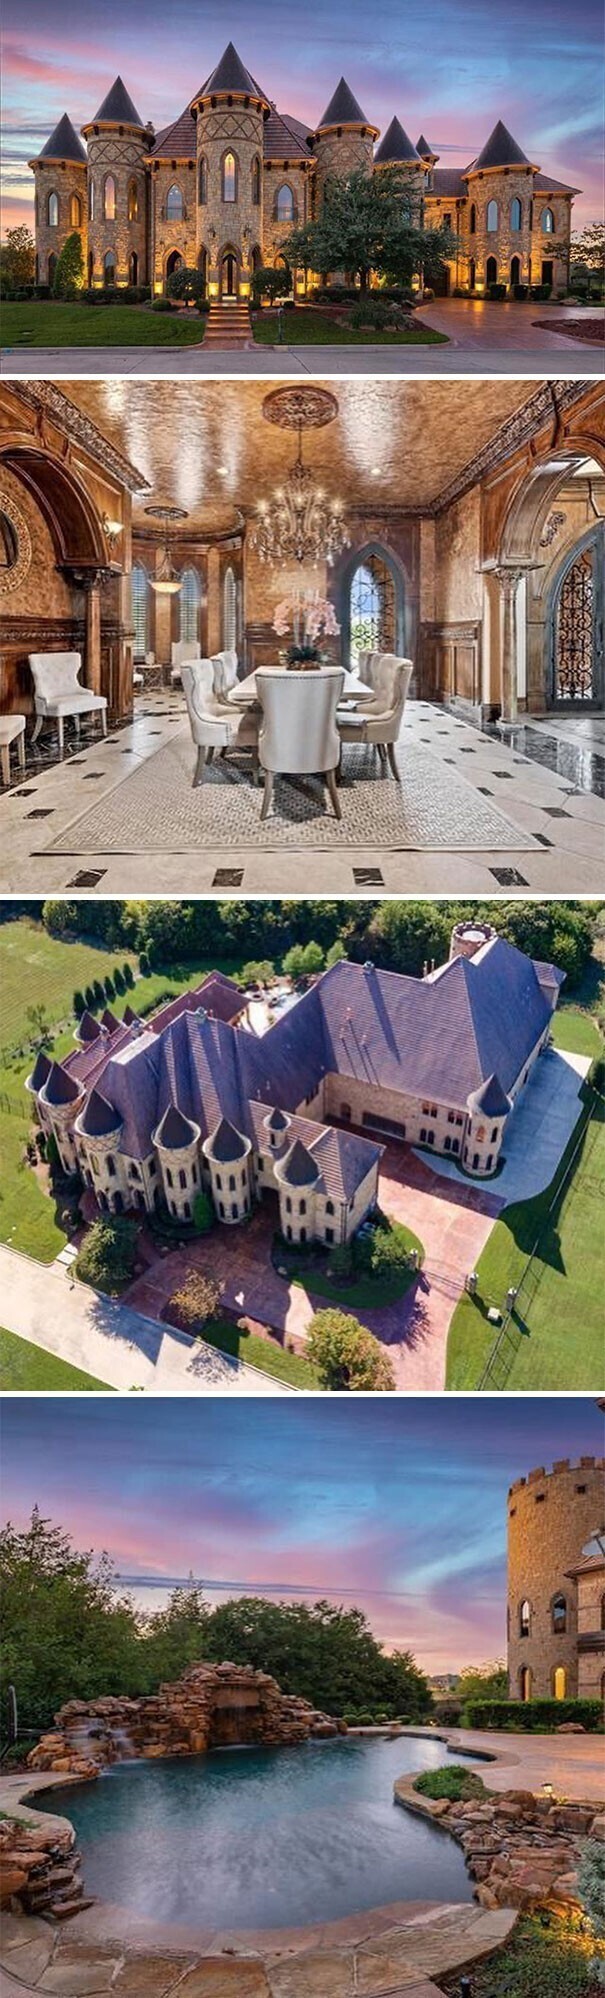 10. Happy Castle, Даллас, Техас. 5 миллионов долларов